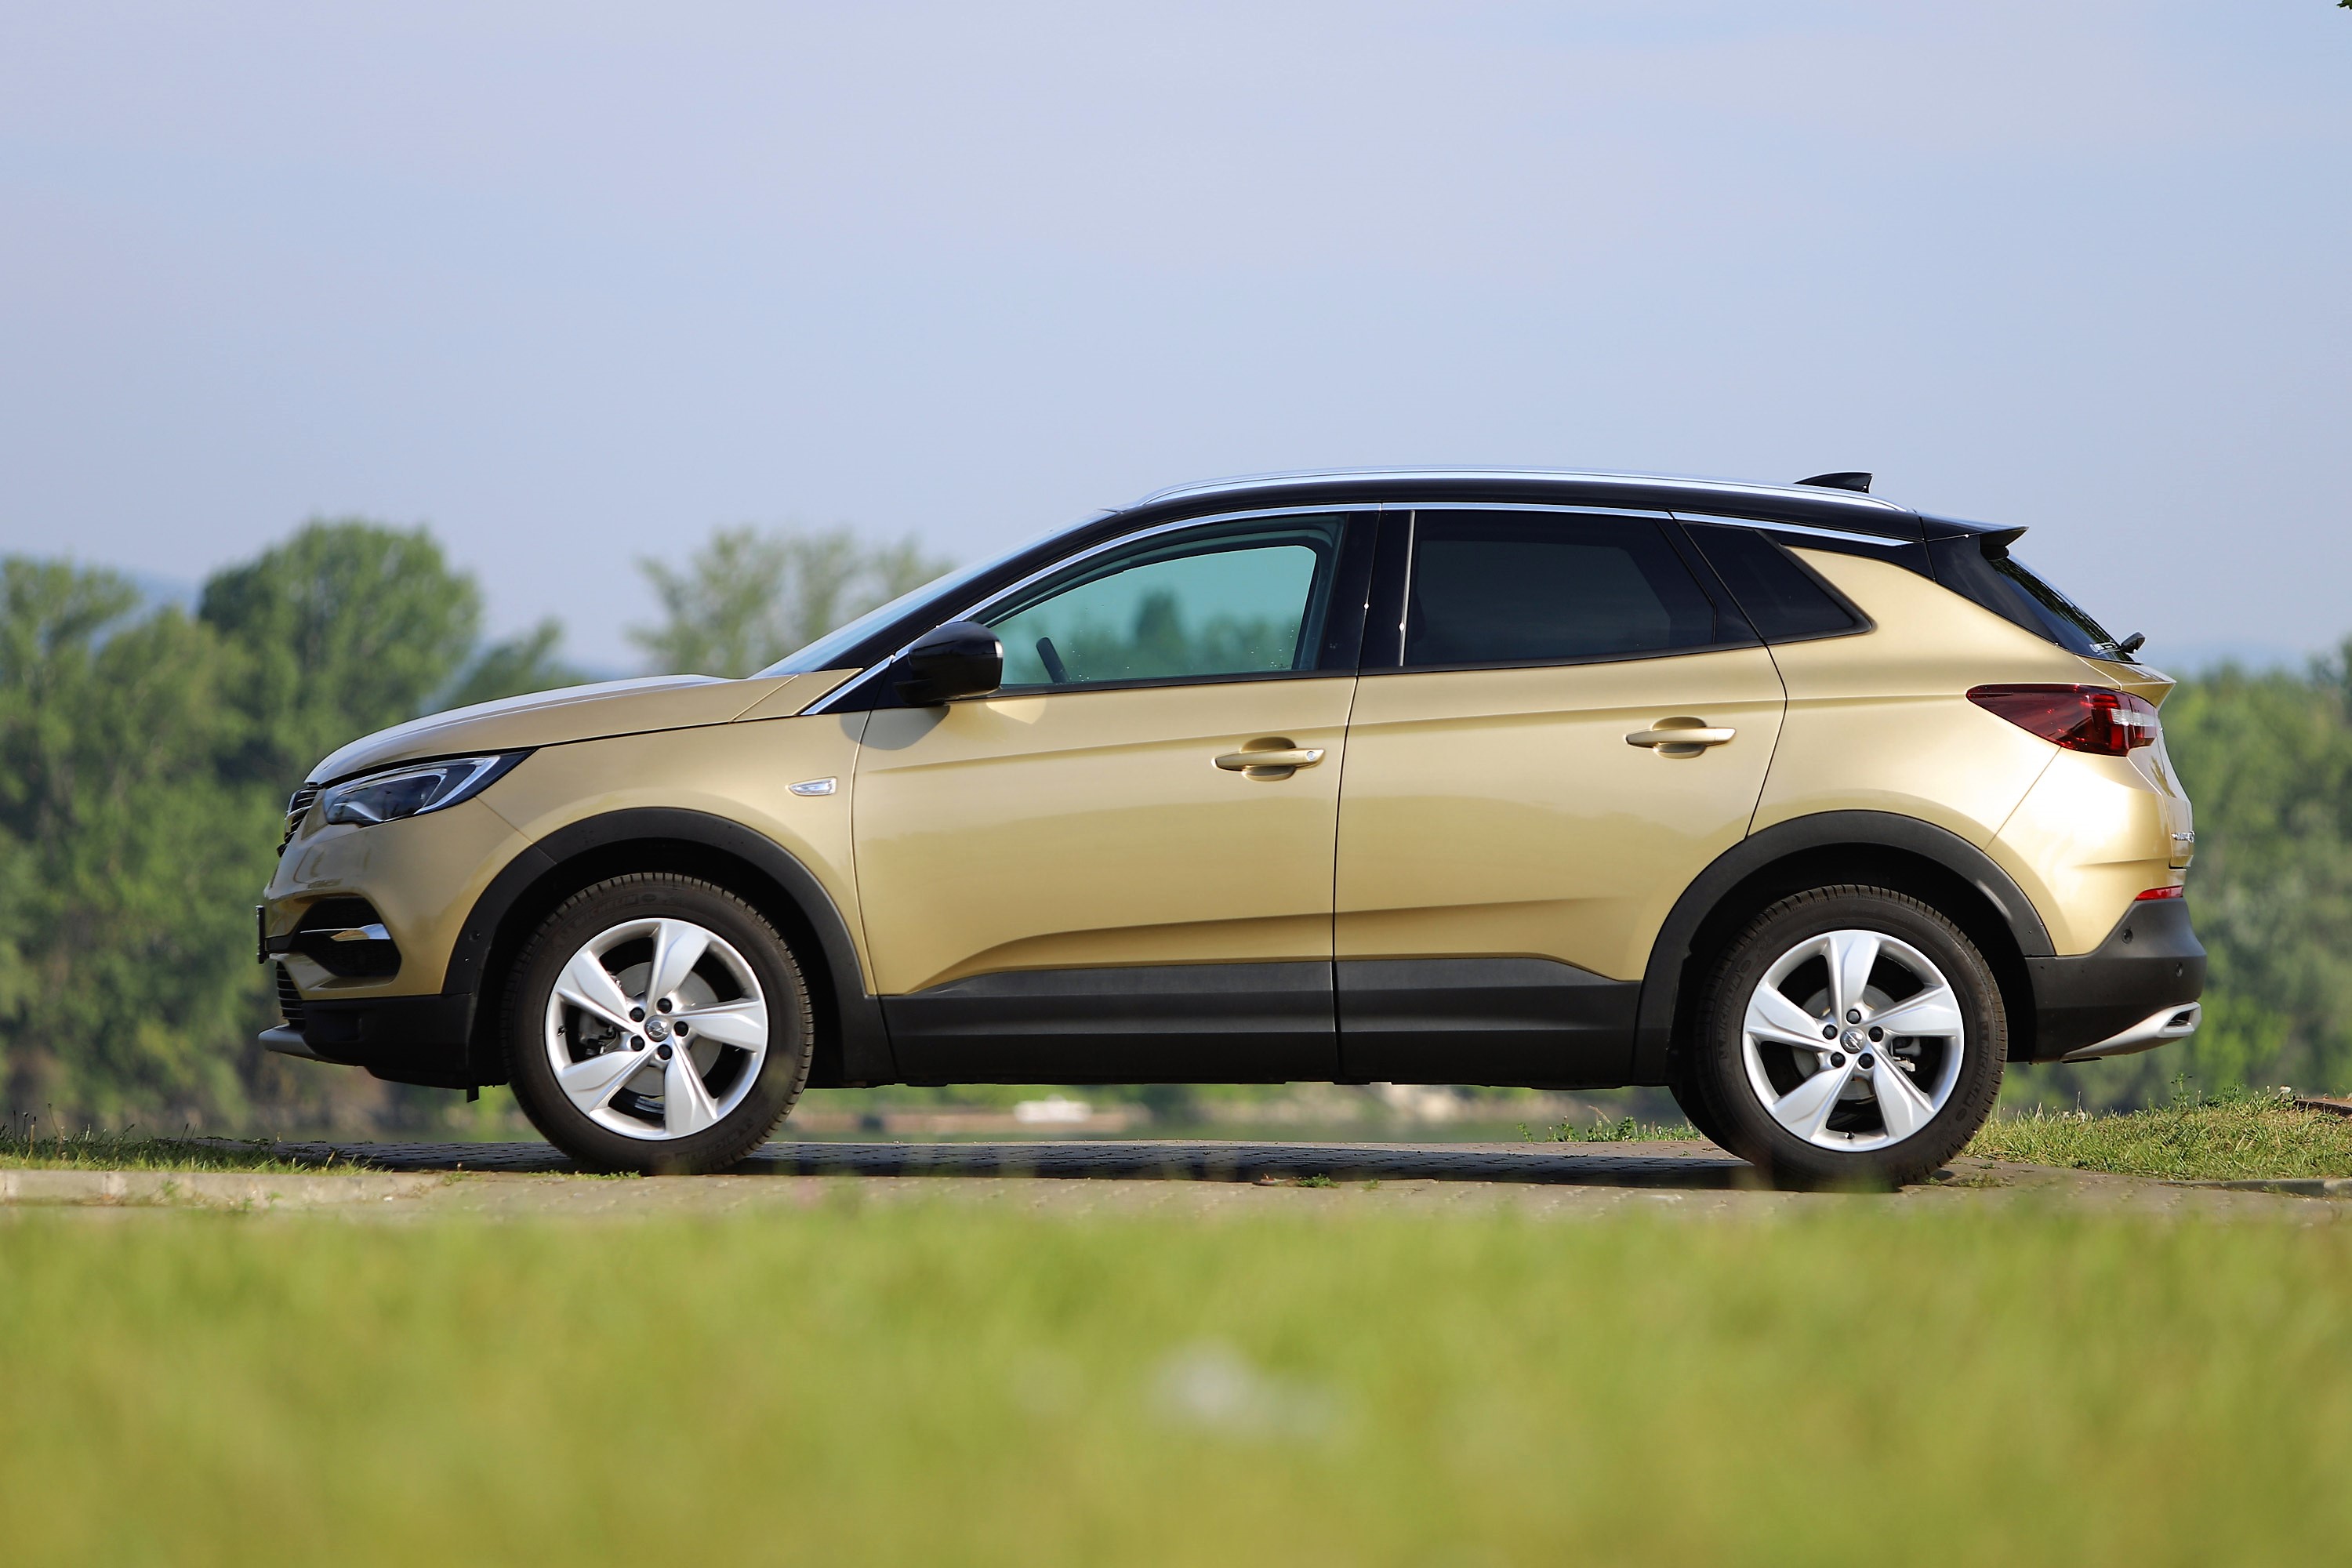 Csak jókat örökölt a szülőktől – Opel Grandland X teszt 6